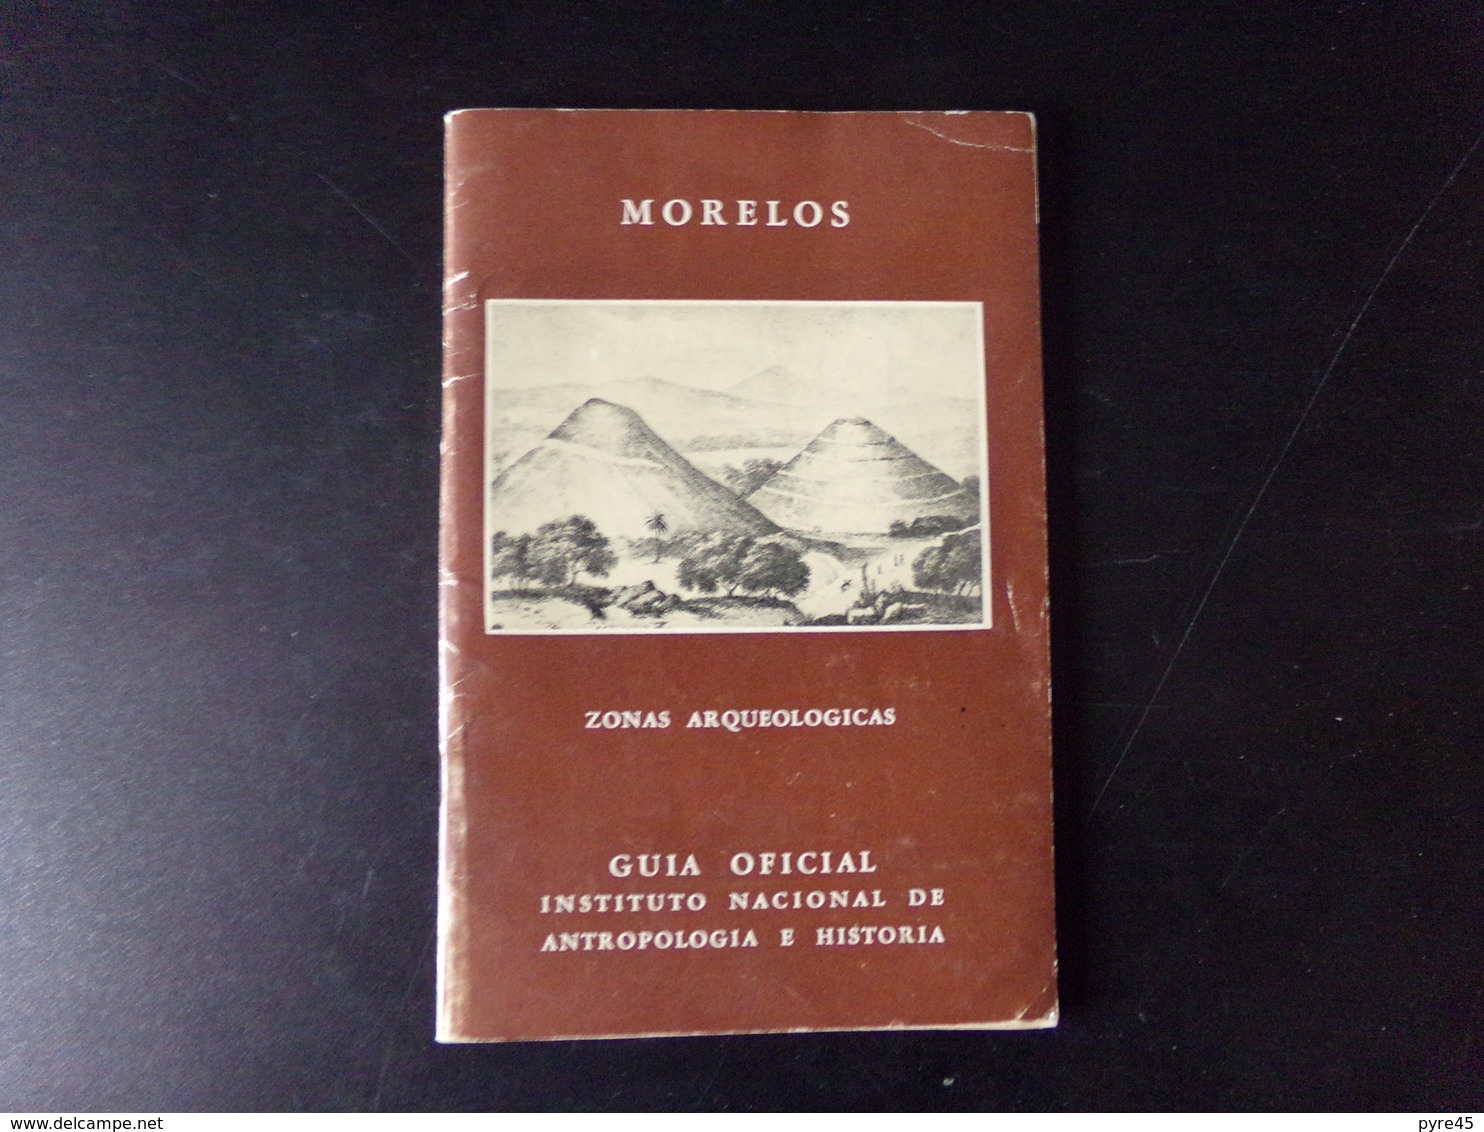 Morelos Zonas Arqueologicas Par Noguera, 1960, 71 Pages - Culture